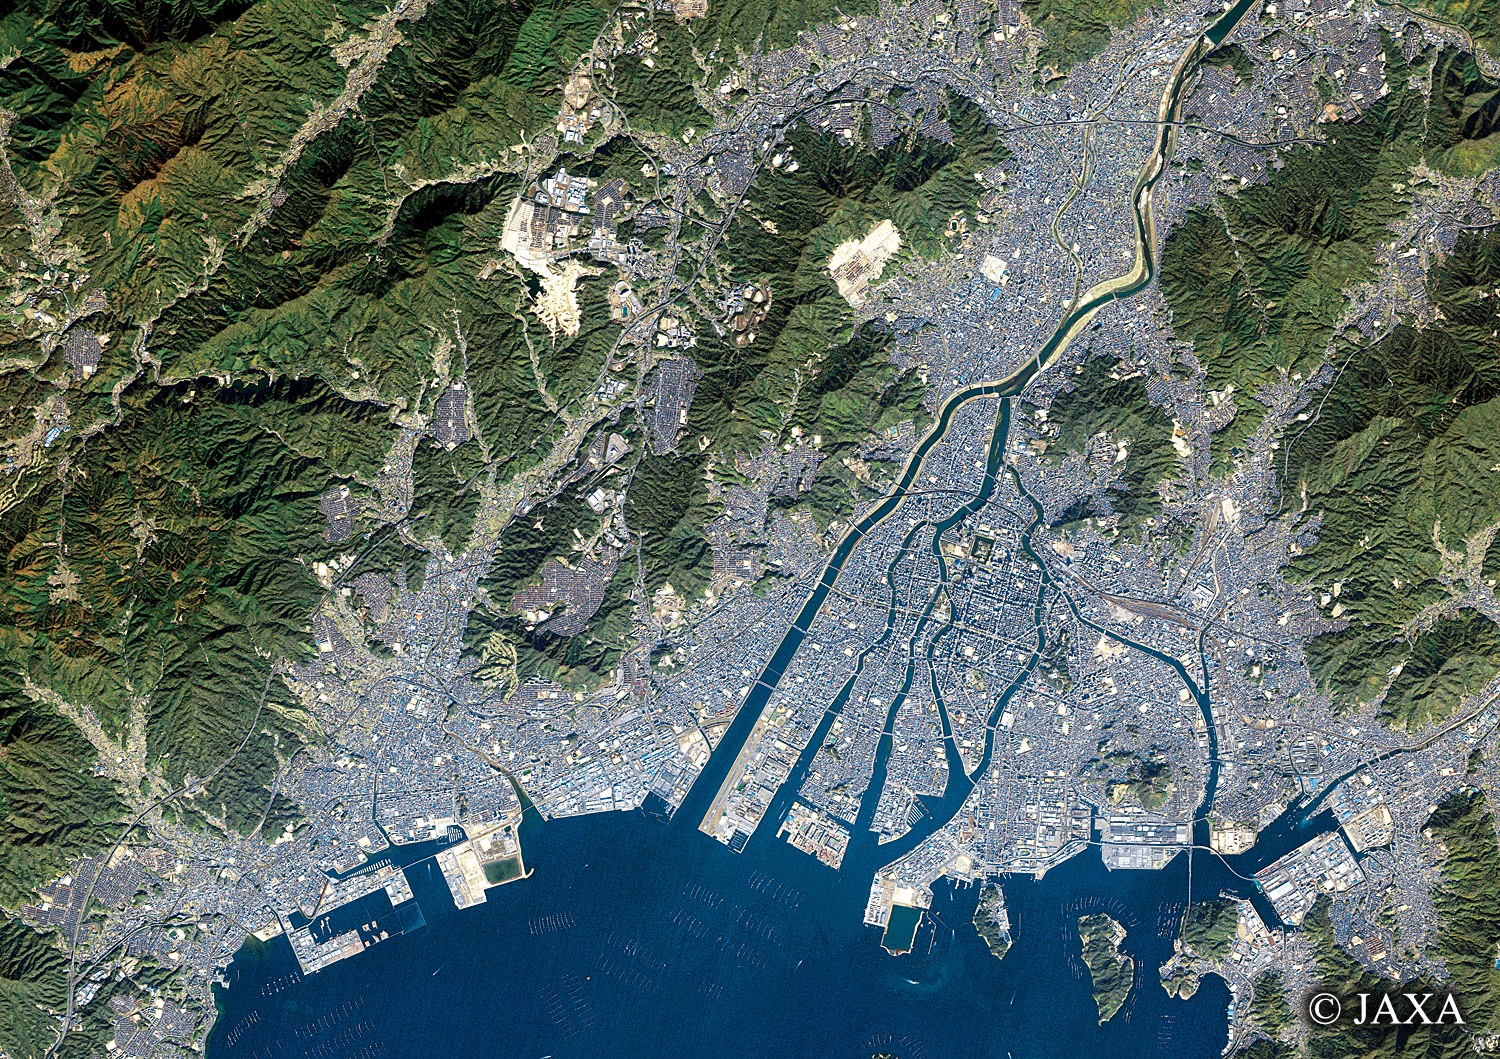 だいちから見た日本の都市 広島市周辺:衛星画像